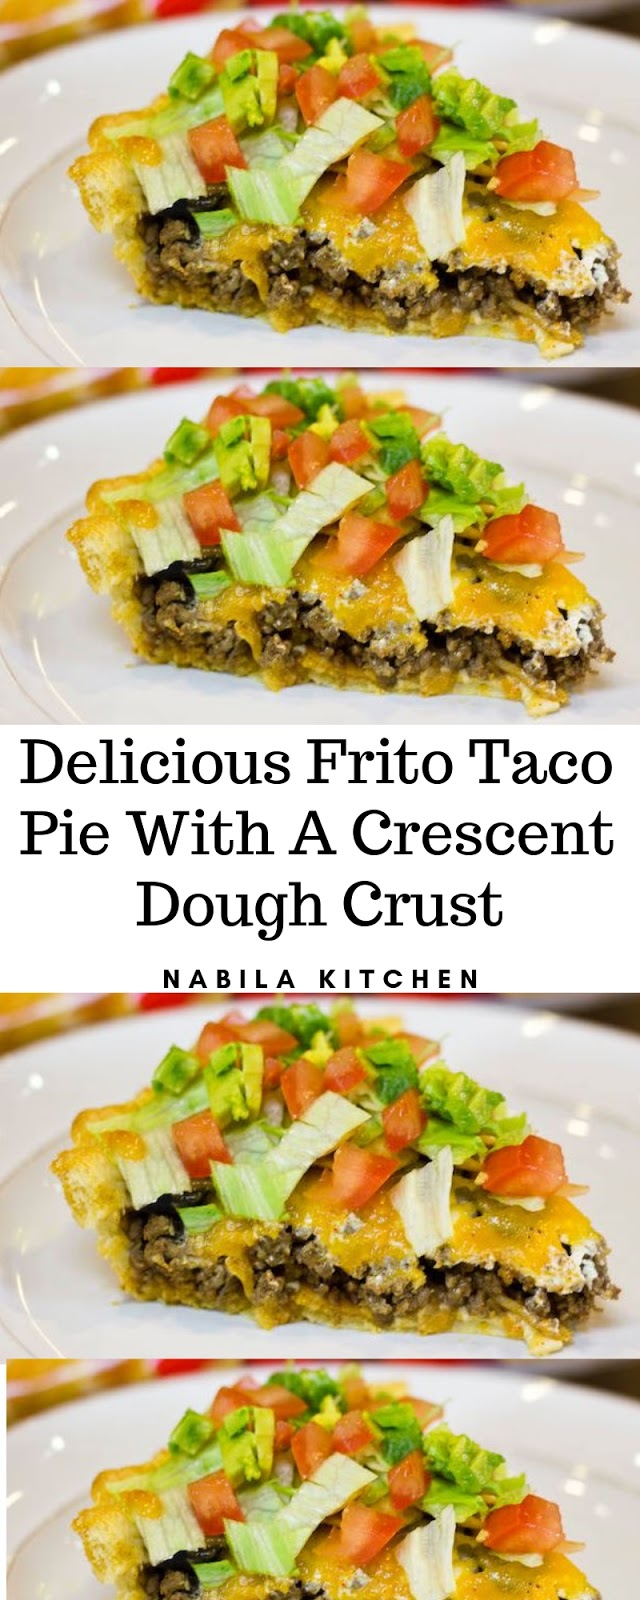 Delicious Frito Taco Pie With A Crescent Dough Crust Recipe